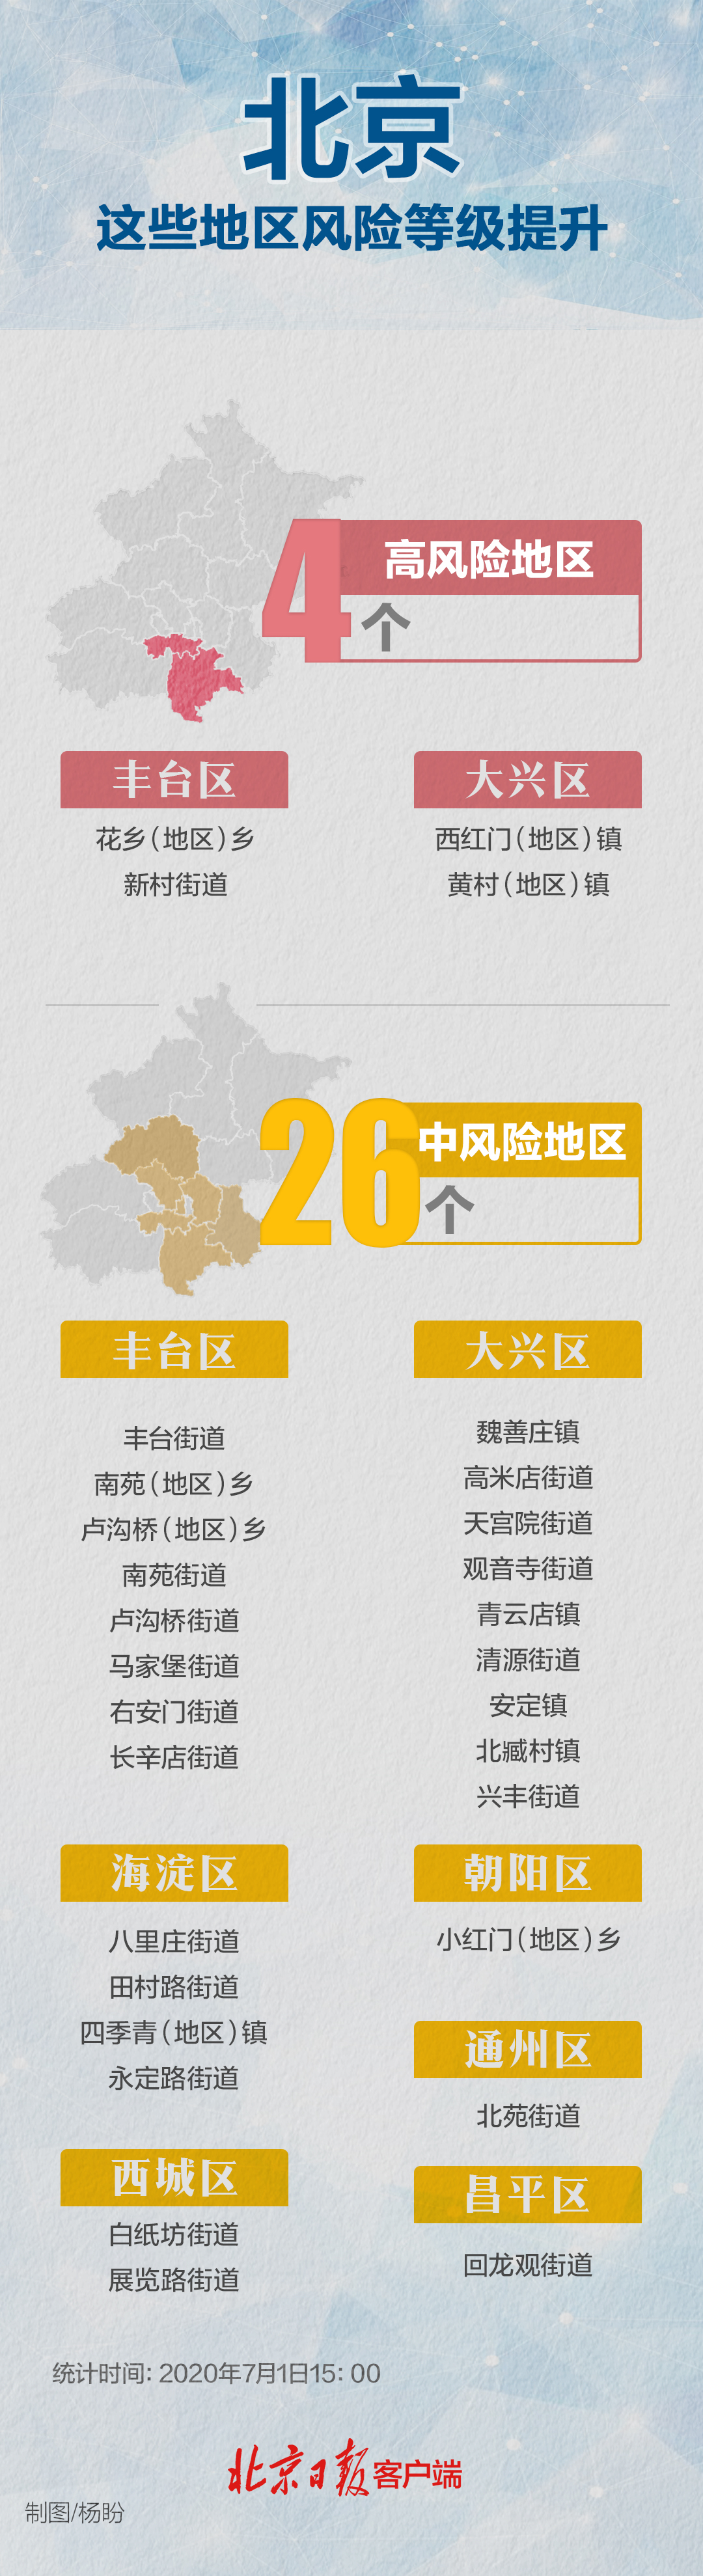 北京东城区中风险地区已清零 现有30个中高风险区